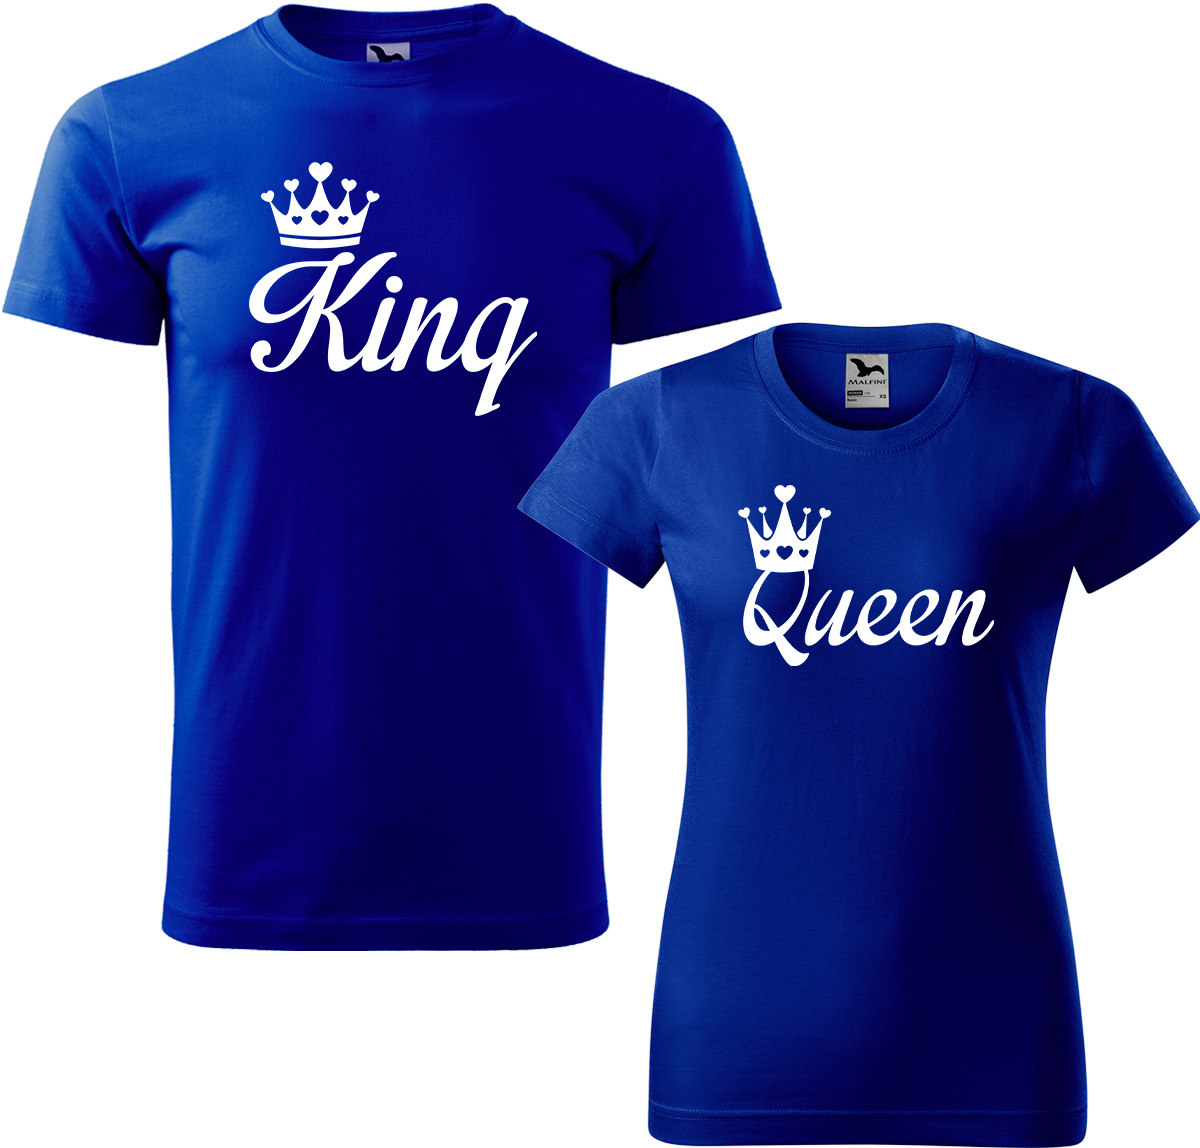 Trička pro páry - King a queen Barva: Královská modrá (05), Velikost dámské tričko: M, Velikost pánské tričko: M